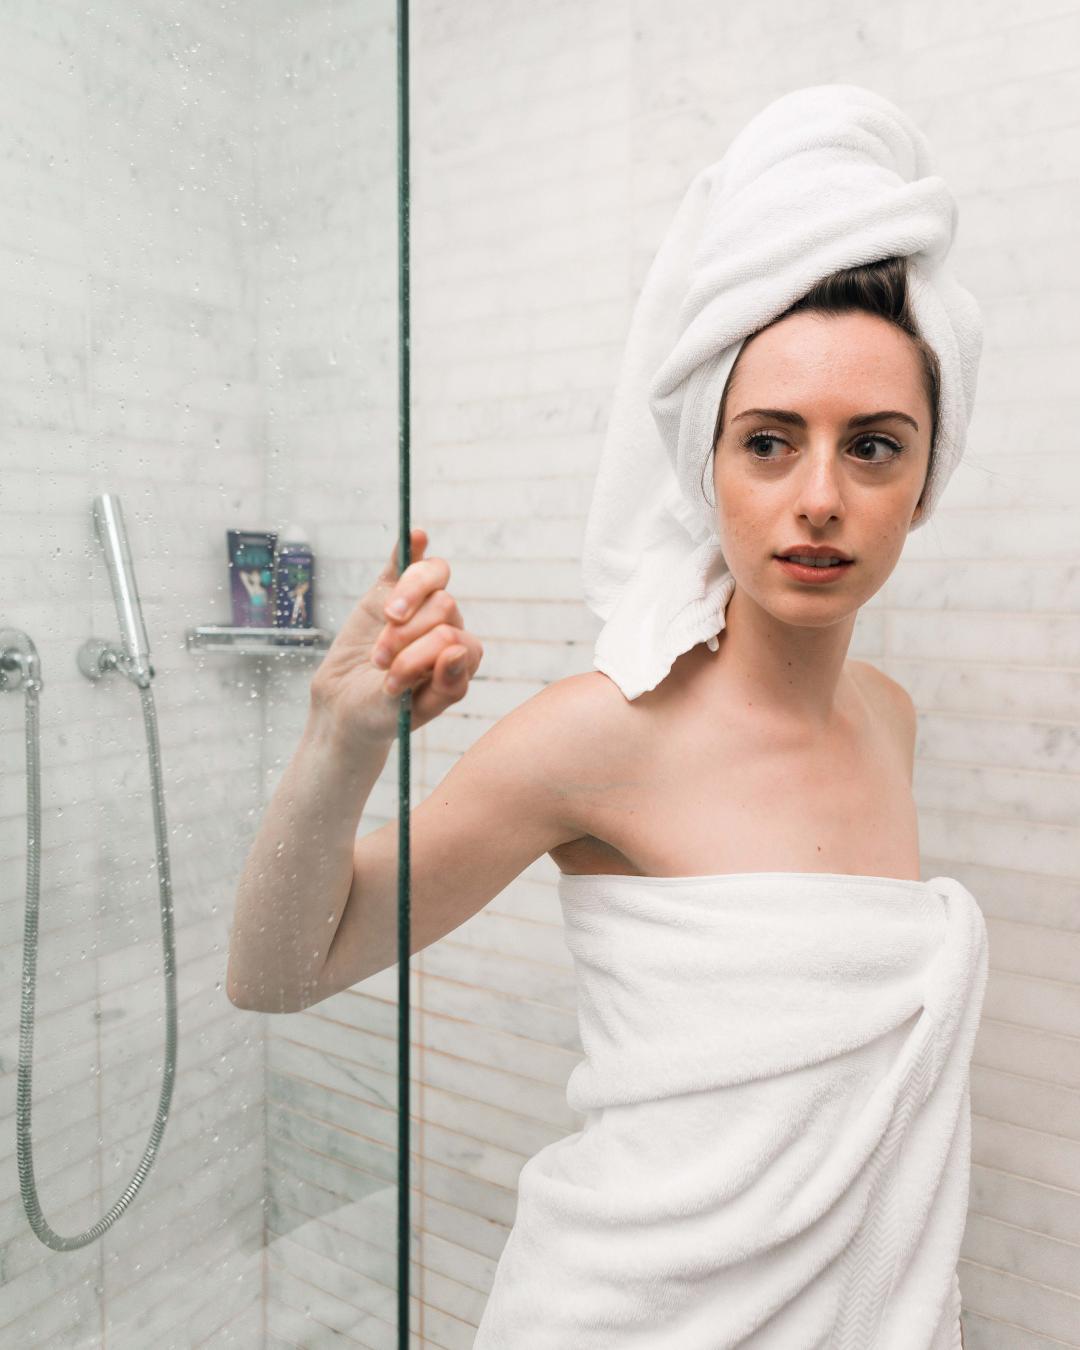 刚洗完澡的女性特写图片下载 - 觅知网